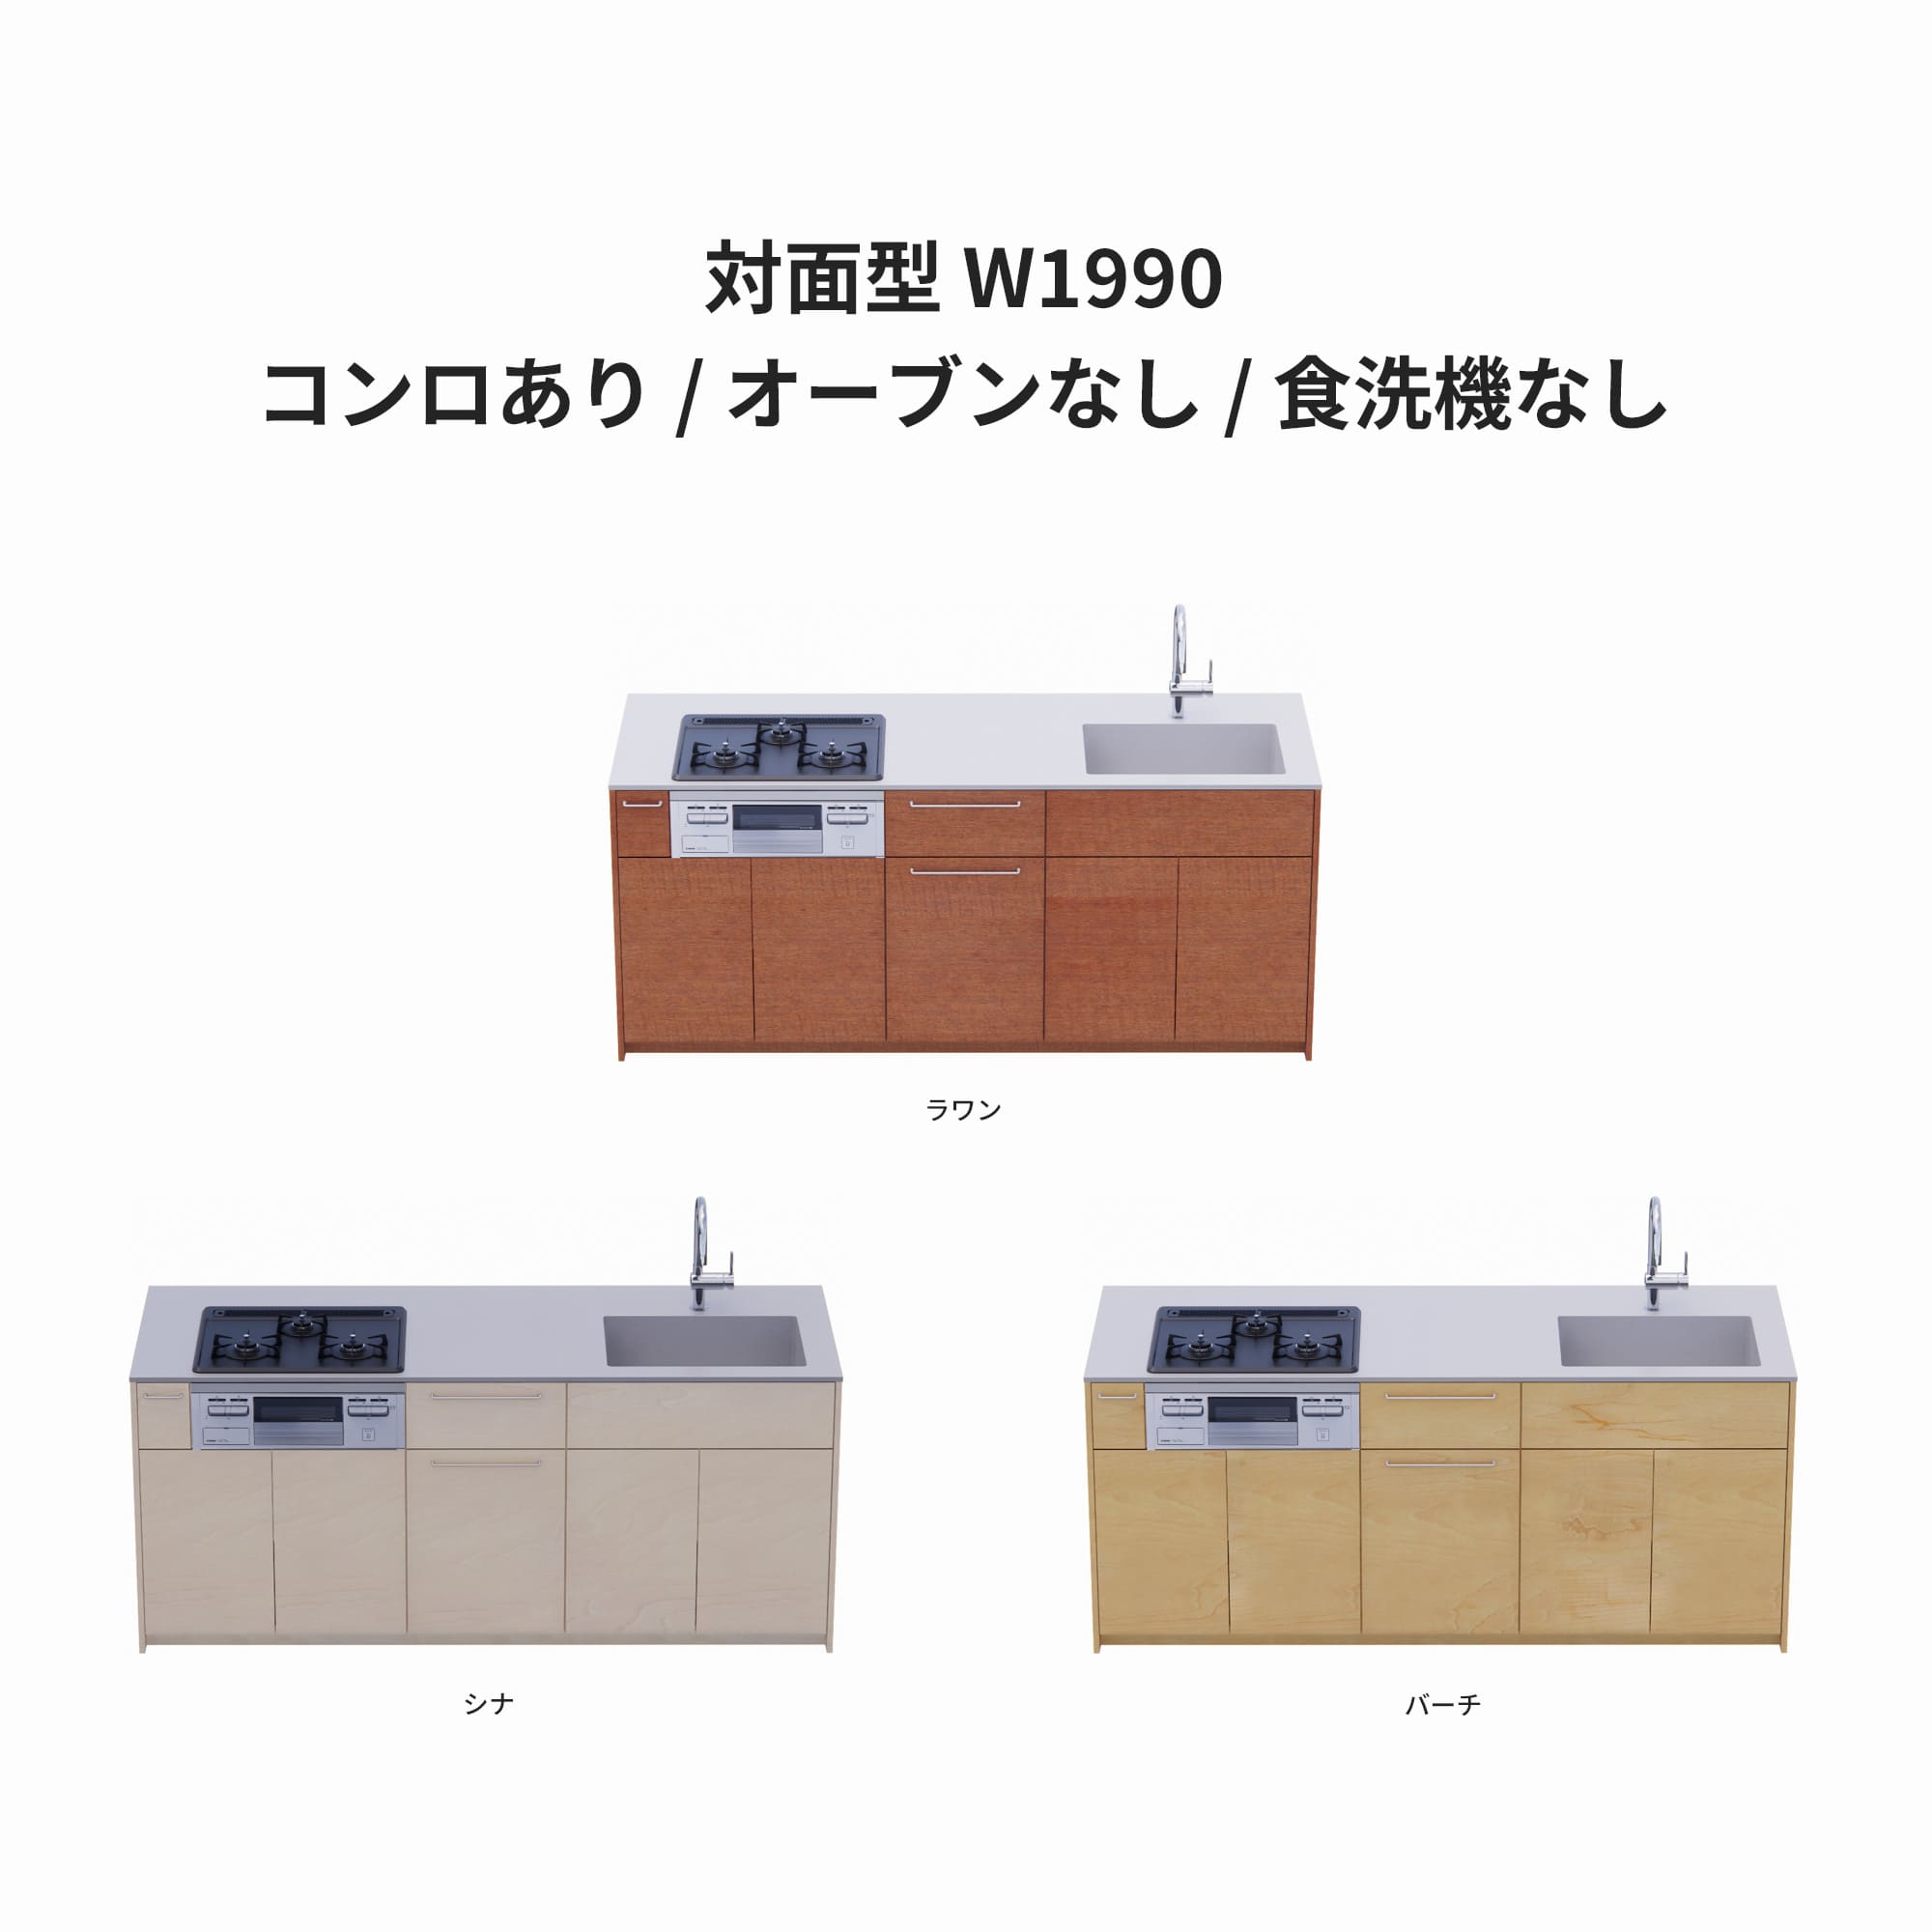 木製システムキッチン 対面型 W1990・コンロあり / オーブンなし / 食洗機なし KB-KC022-31-G183 ラワン・シナ・バーチが選択できます